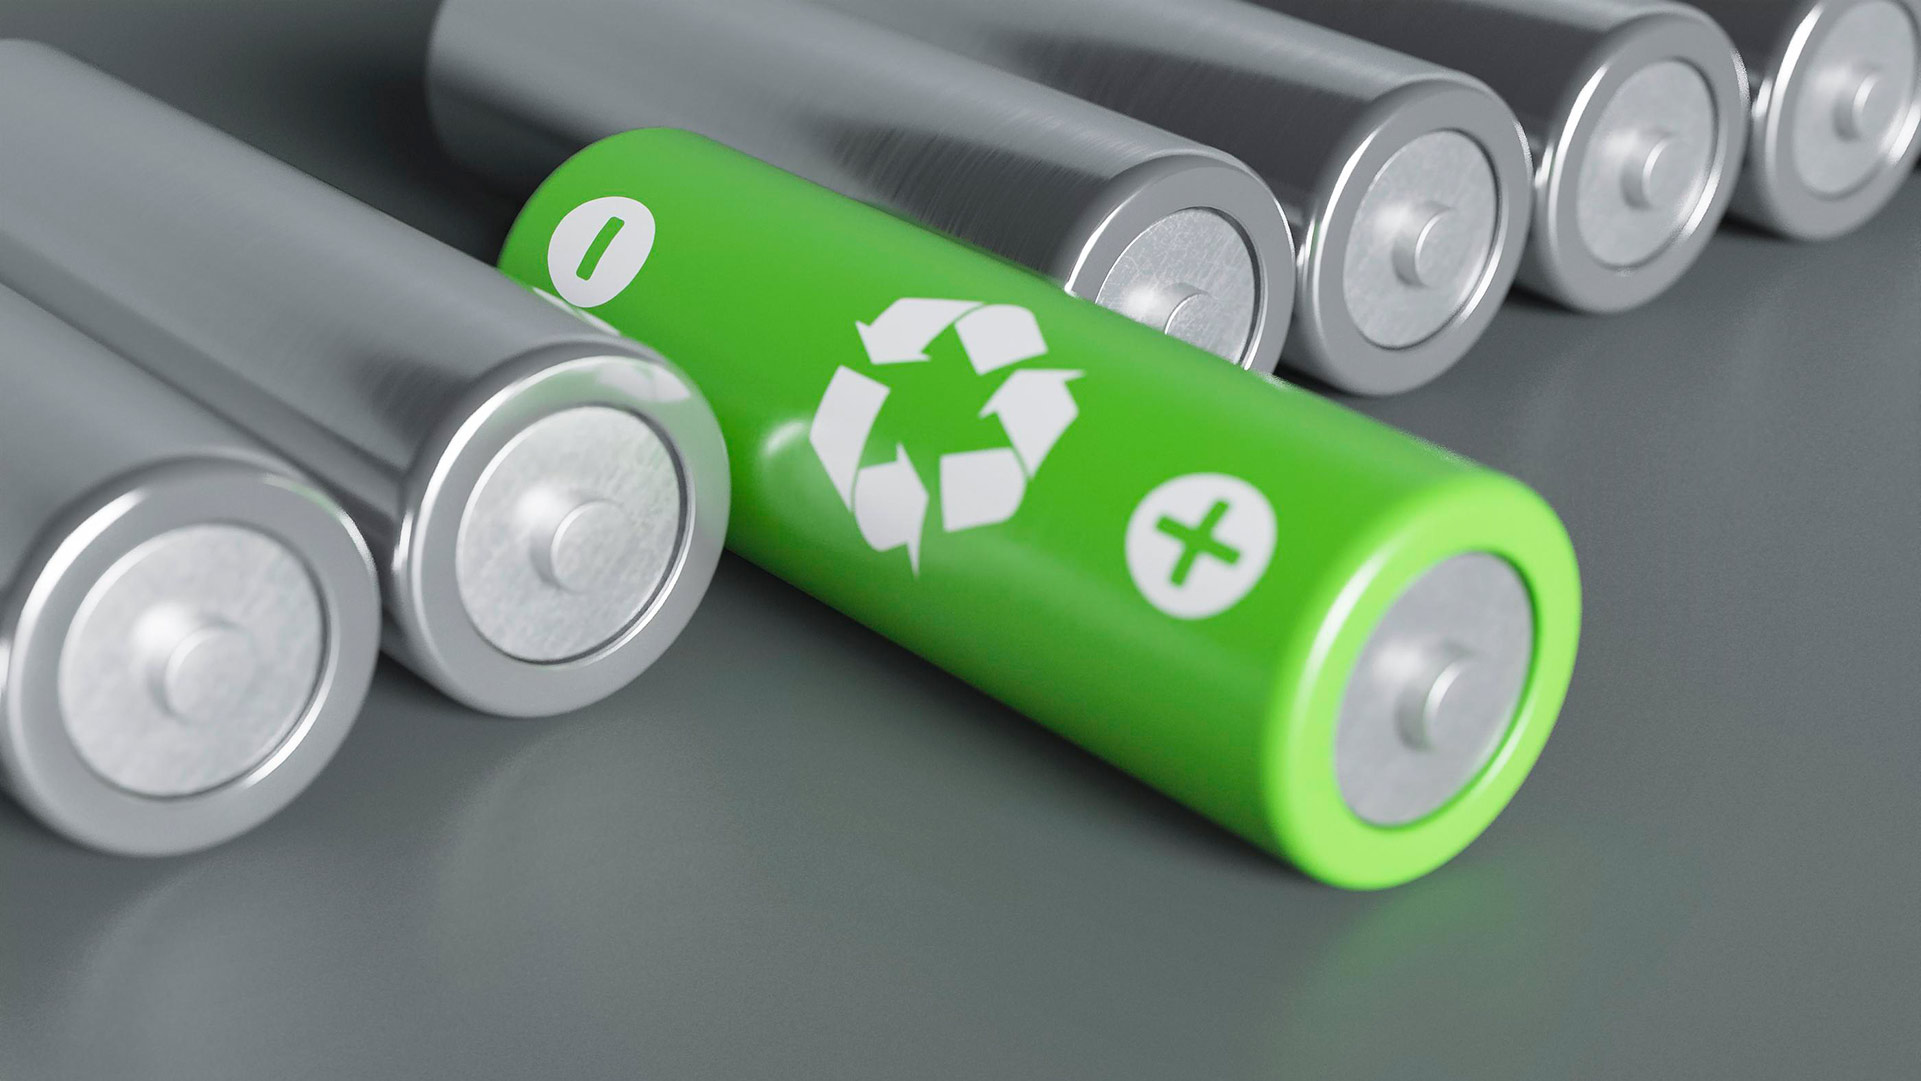 18650 vs. 21700 vs. 20700 Batteries: What's Best for Your Vape Mod?